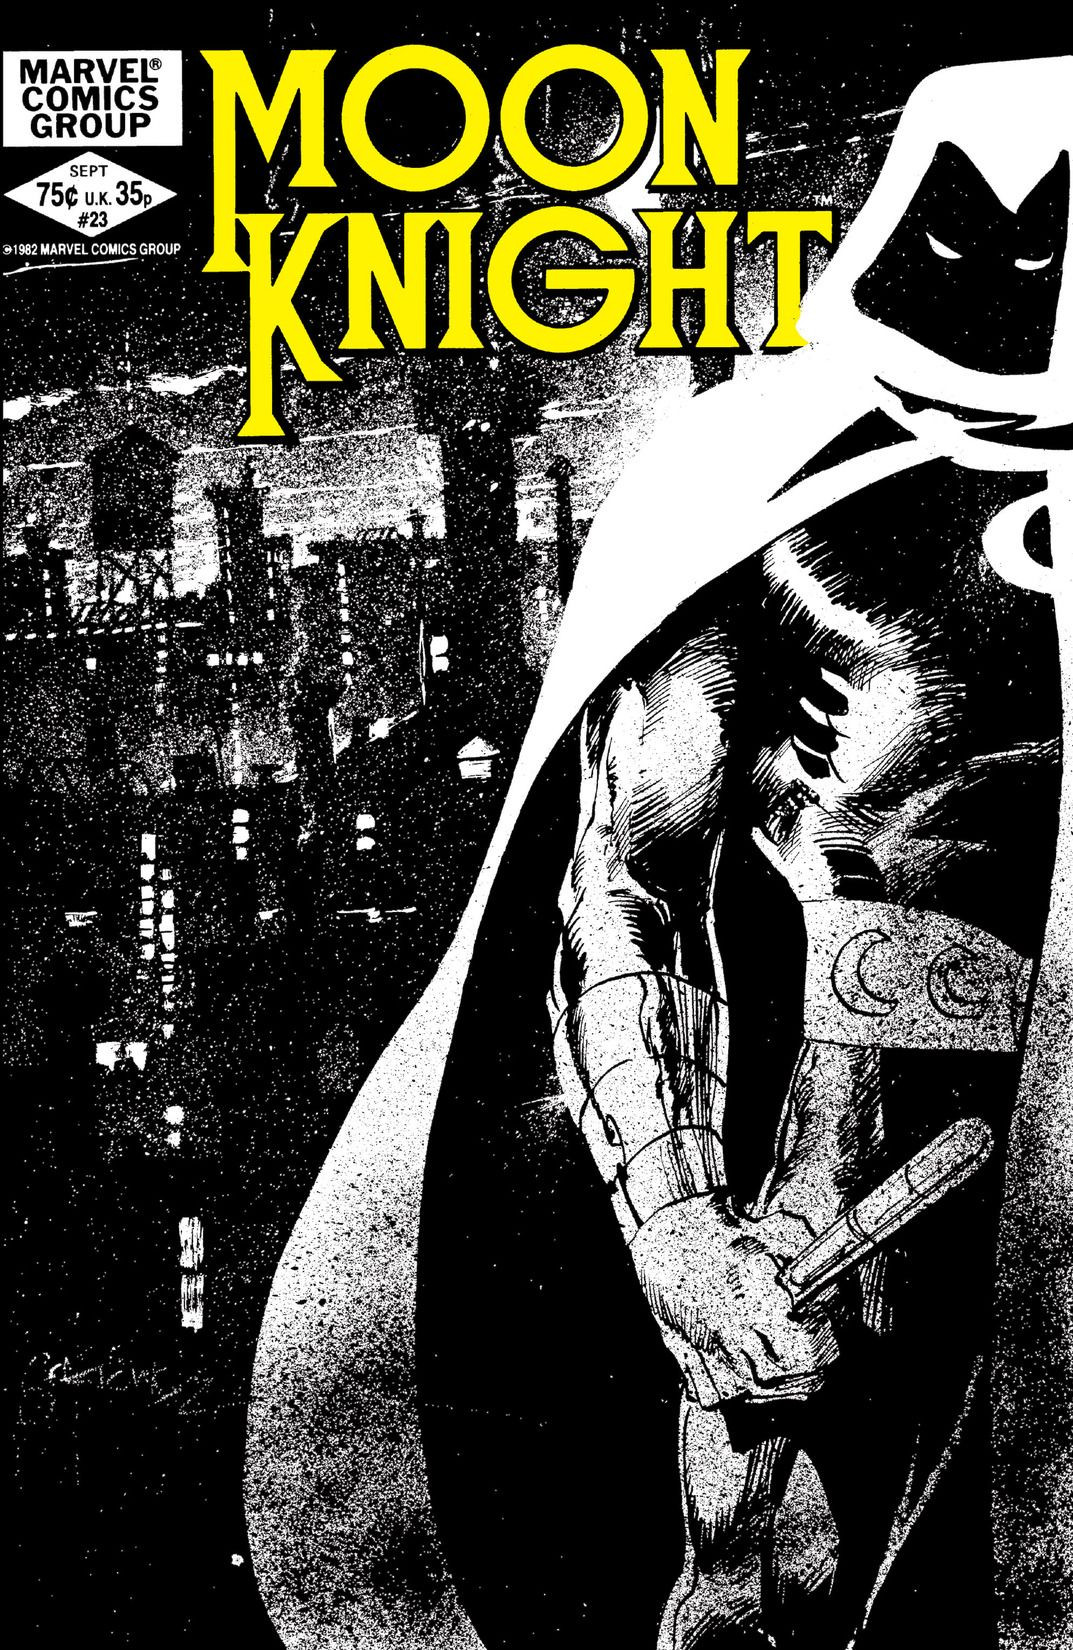 Moon Knight, Vol. 1 by Warren Ellis